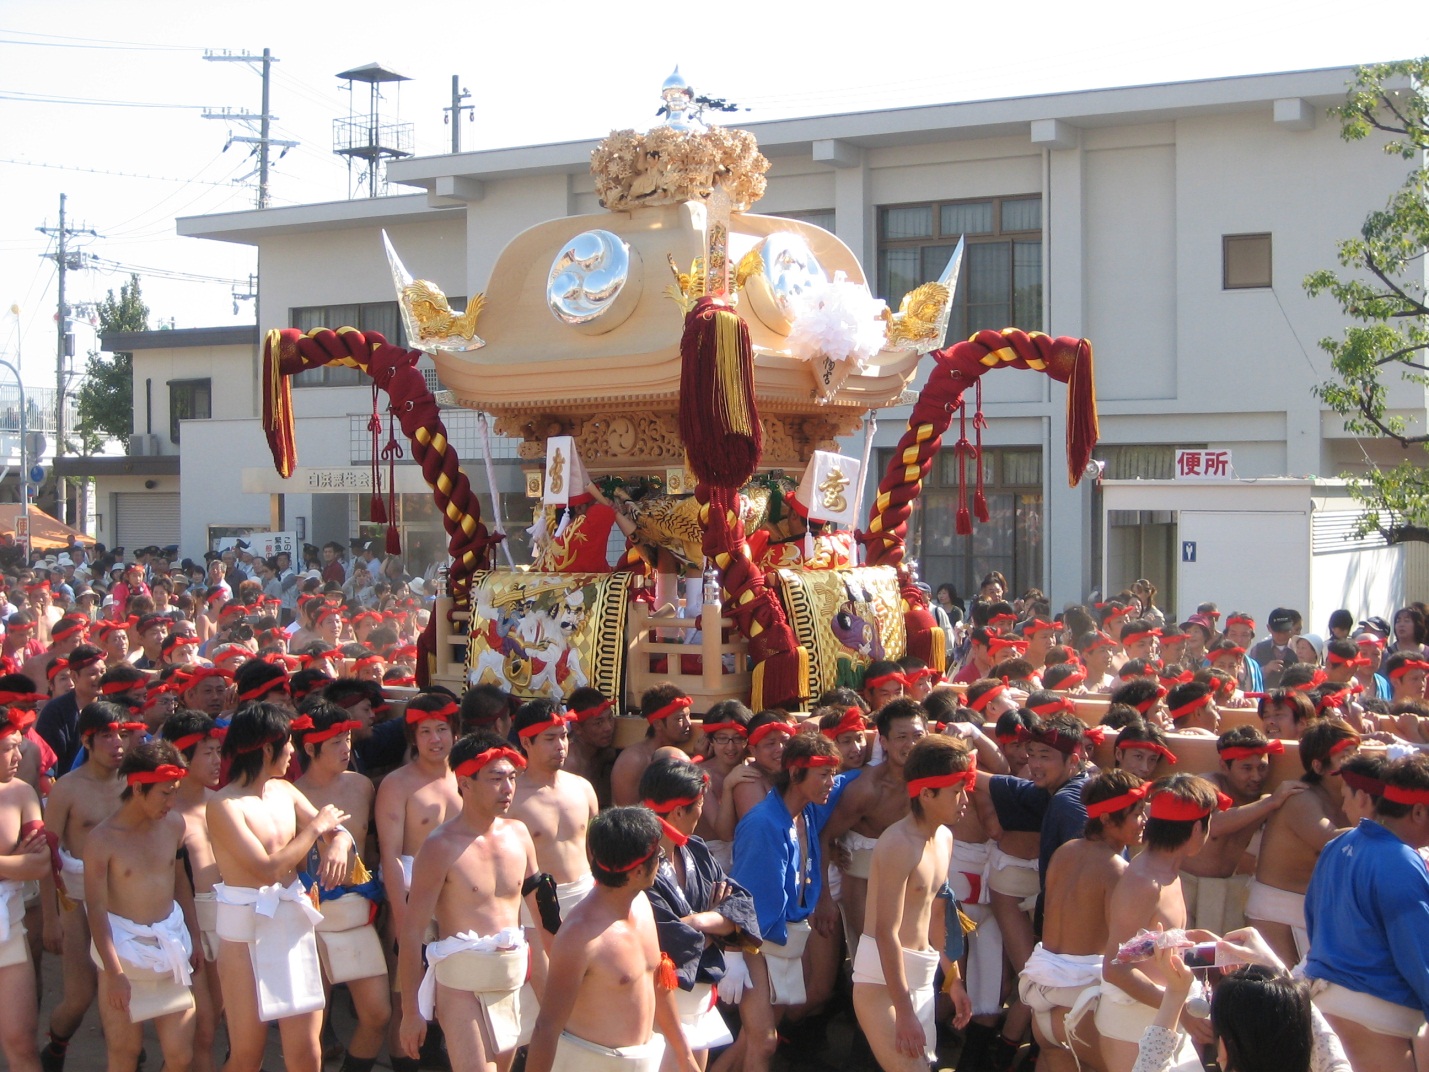 Description: Káº¿t quáº£ hÃ¬nh áº£nh cho Kenka Matsuri festival